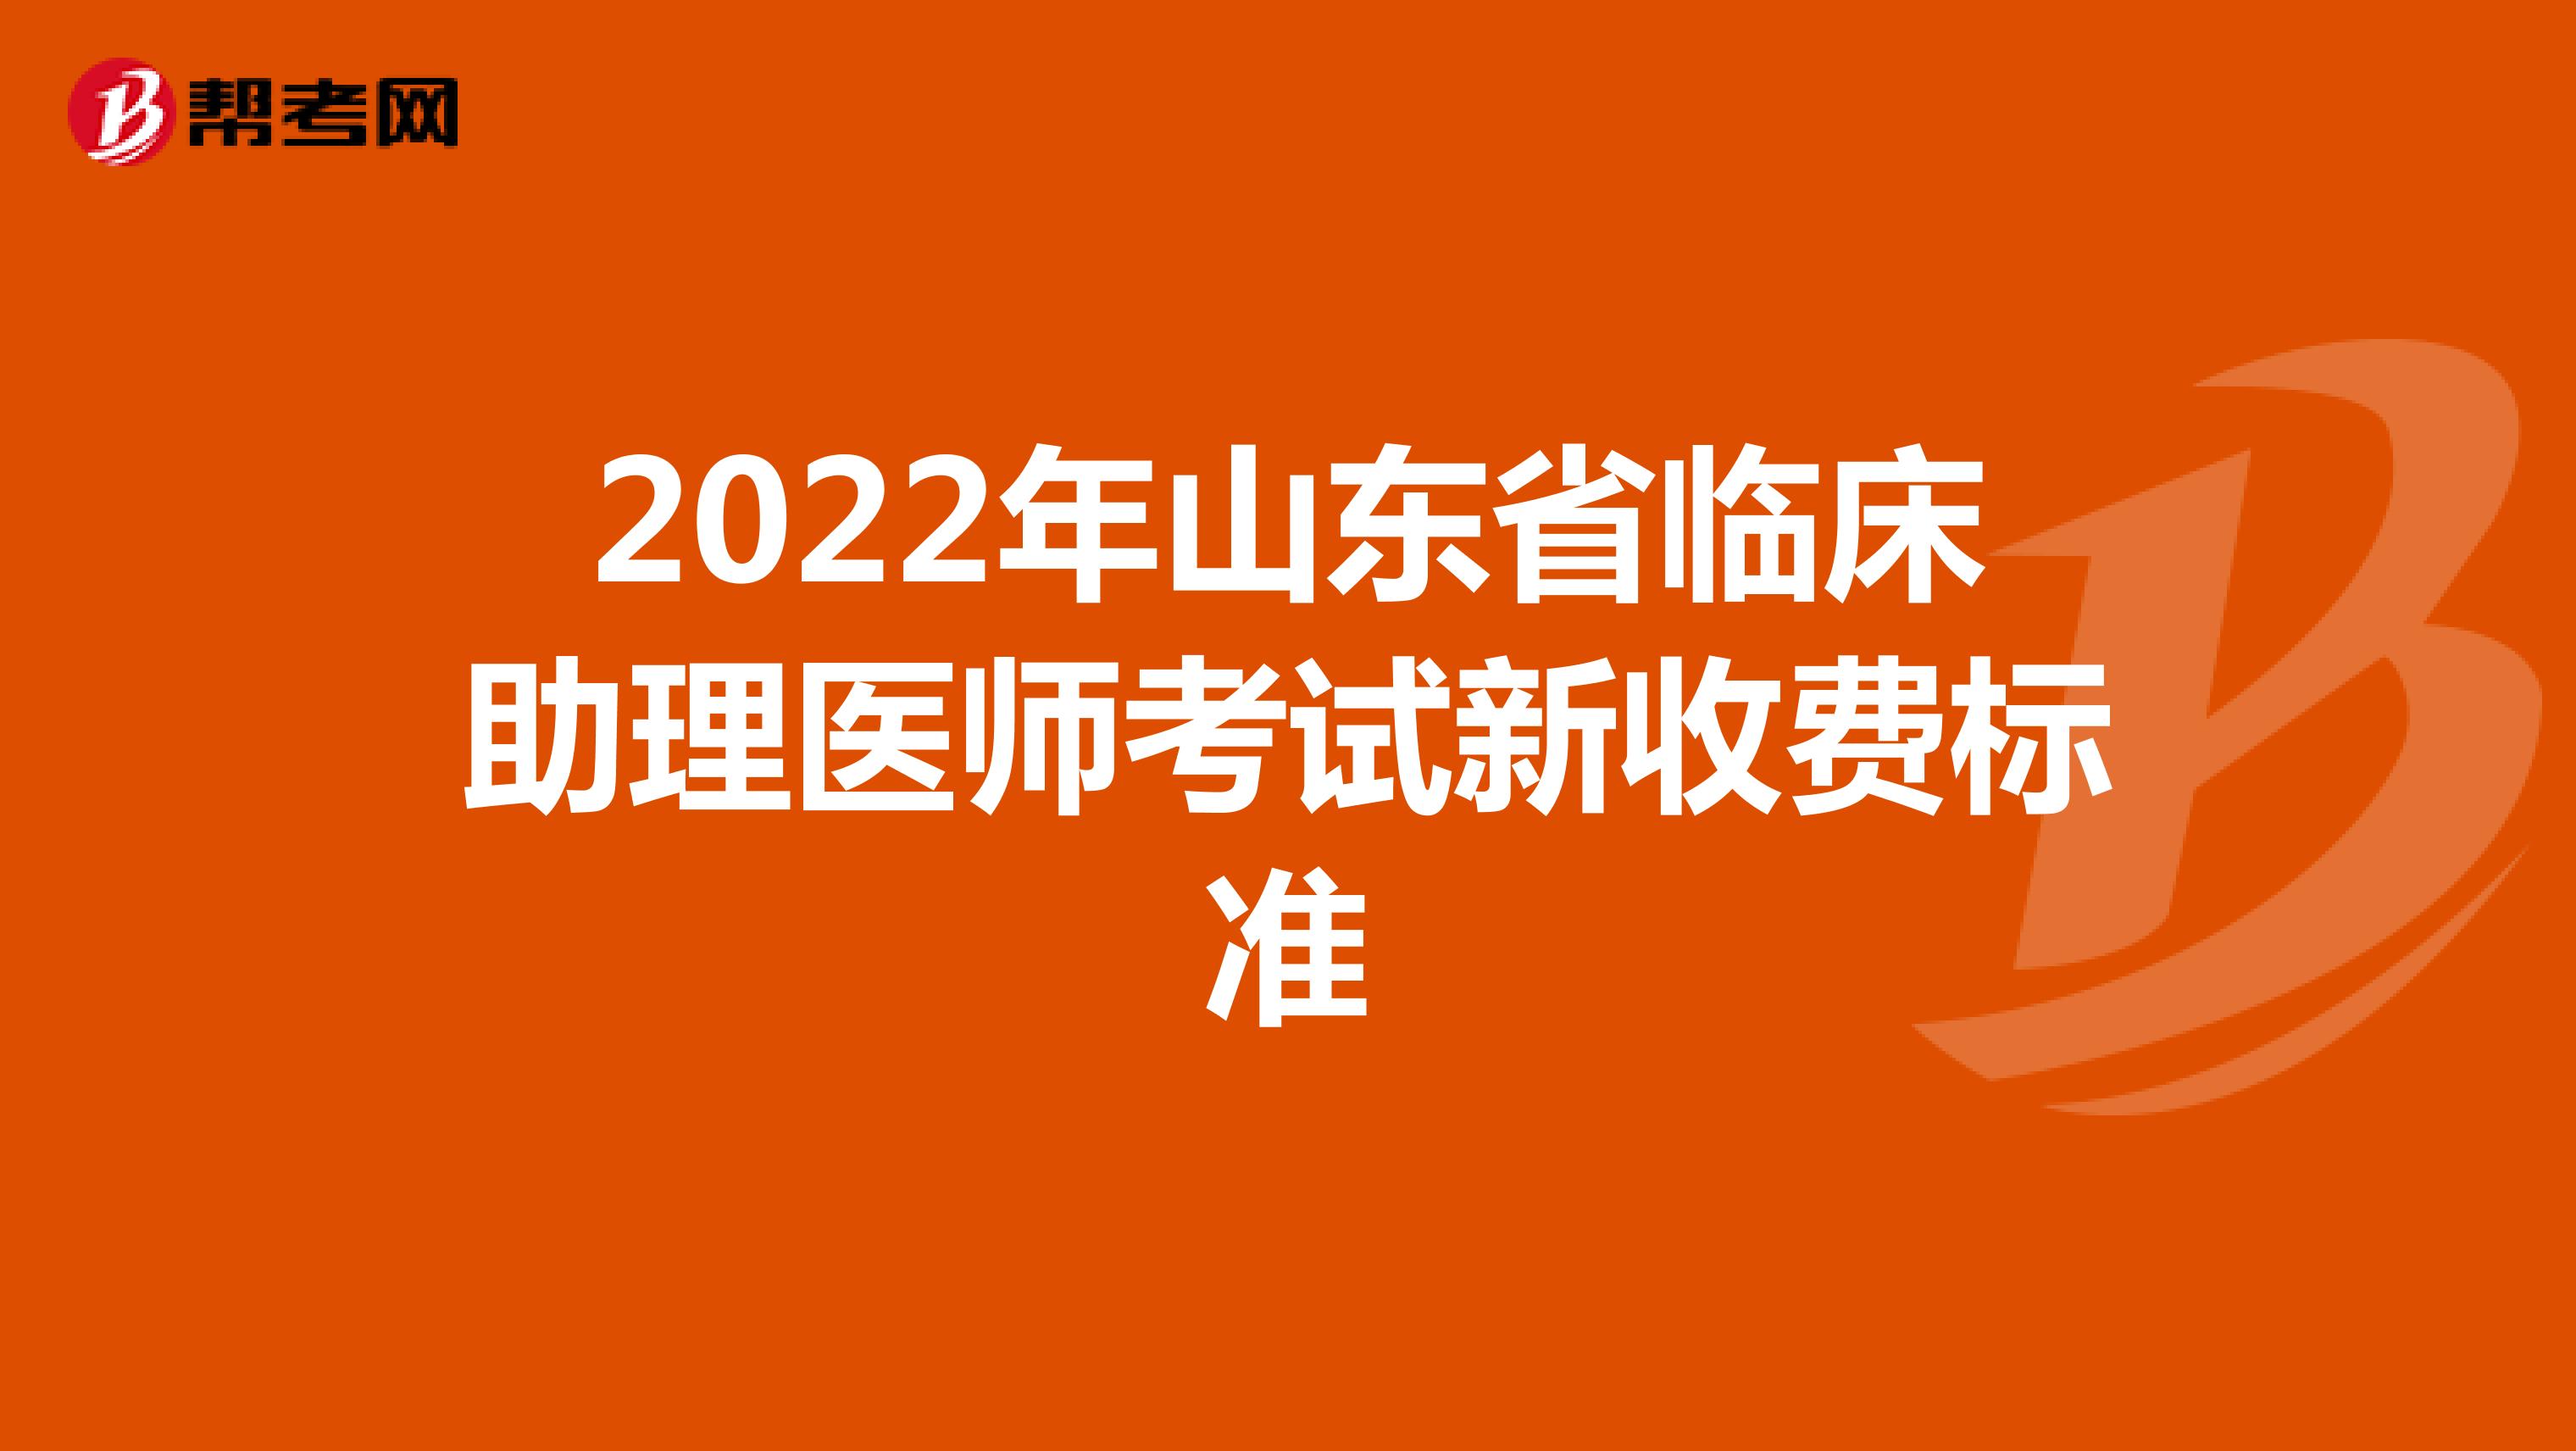 2022年山东省临床助理医师考试新收费标准